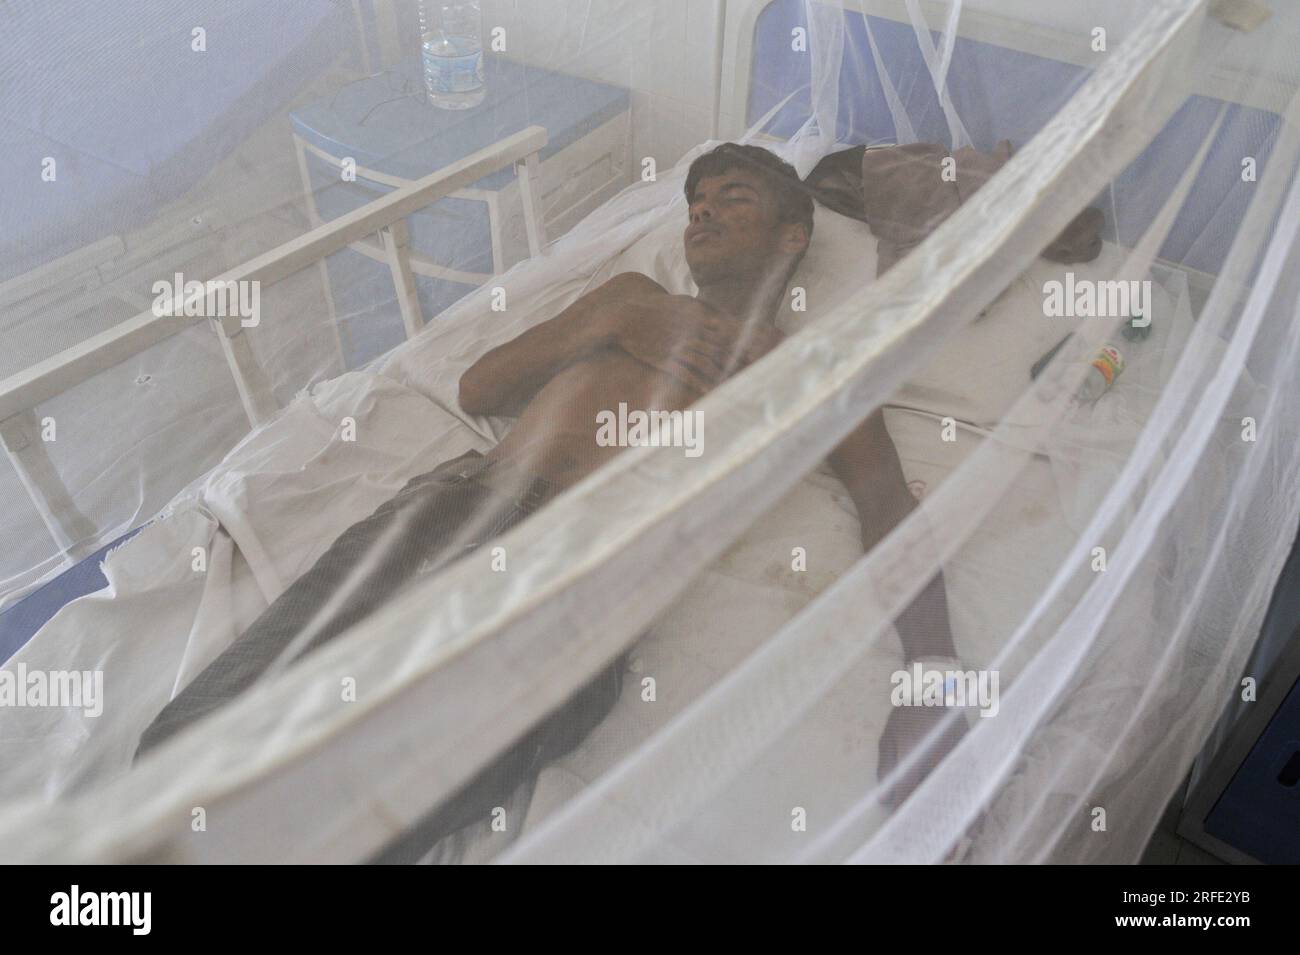 Menschen mit Dengue werden in der Dengue Station des Sylhet mag Osmani Medical College Hospital behandelt. Mehr als 6 Patienten werden derzeit behandelt. Die Zahl der in den Krankenhäusern von Bangladesch diagnostizierten Dengue-Patienten nimmt allmählich zu, und die Zahl der Dengue-Fälle und Todesfälle hat in den letzten drei Wochen im ganzen Land alarmierend zugenommen. Sylhet, Bangladesch. Stockfoto